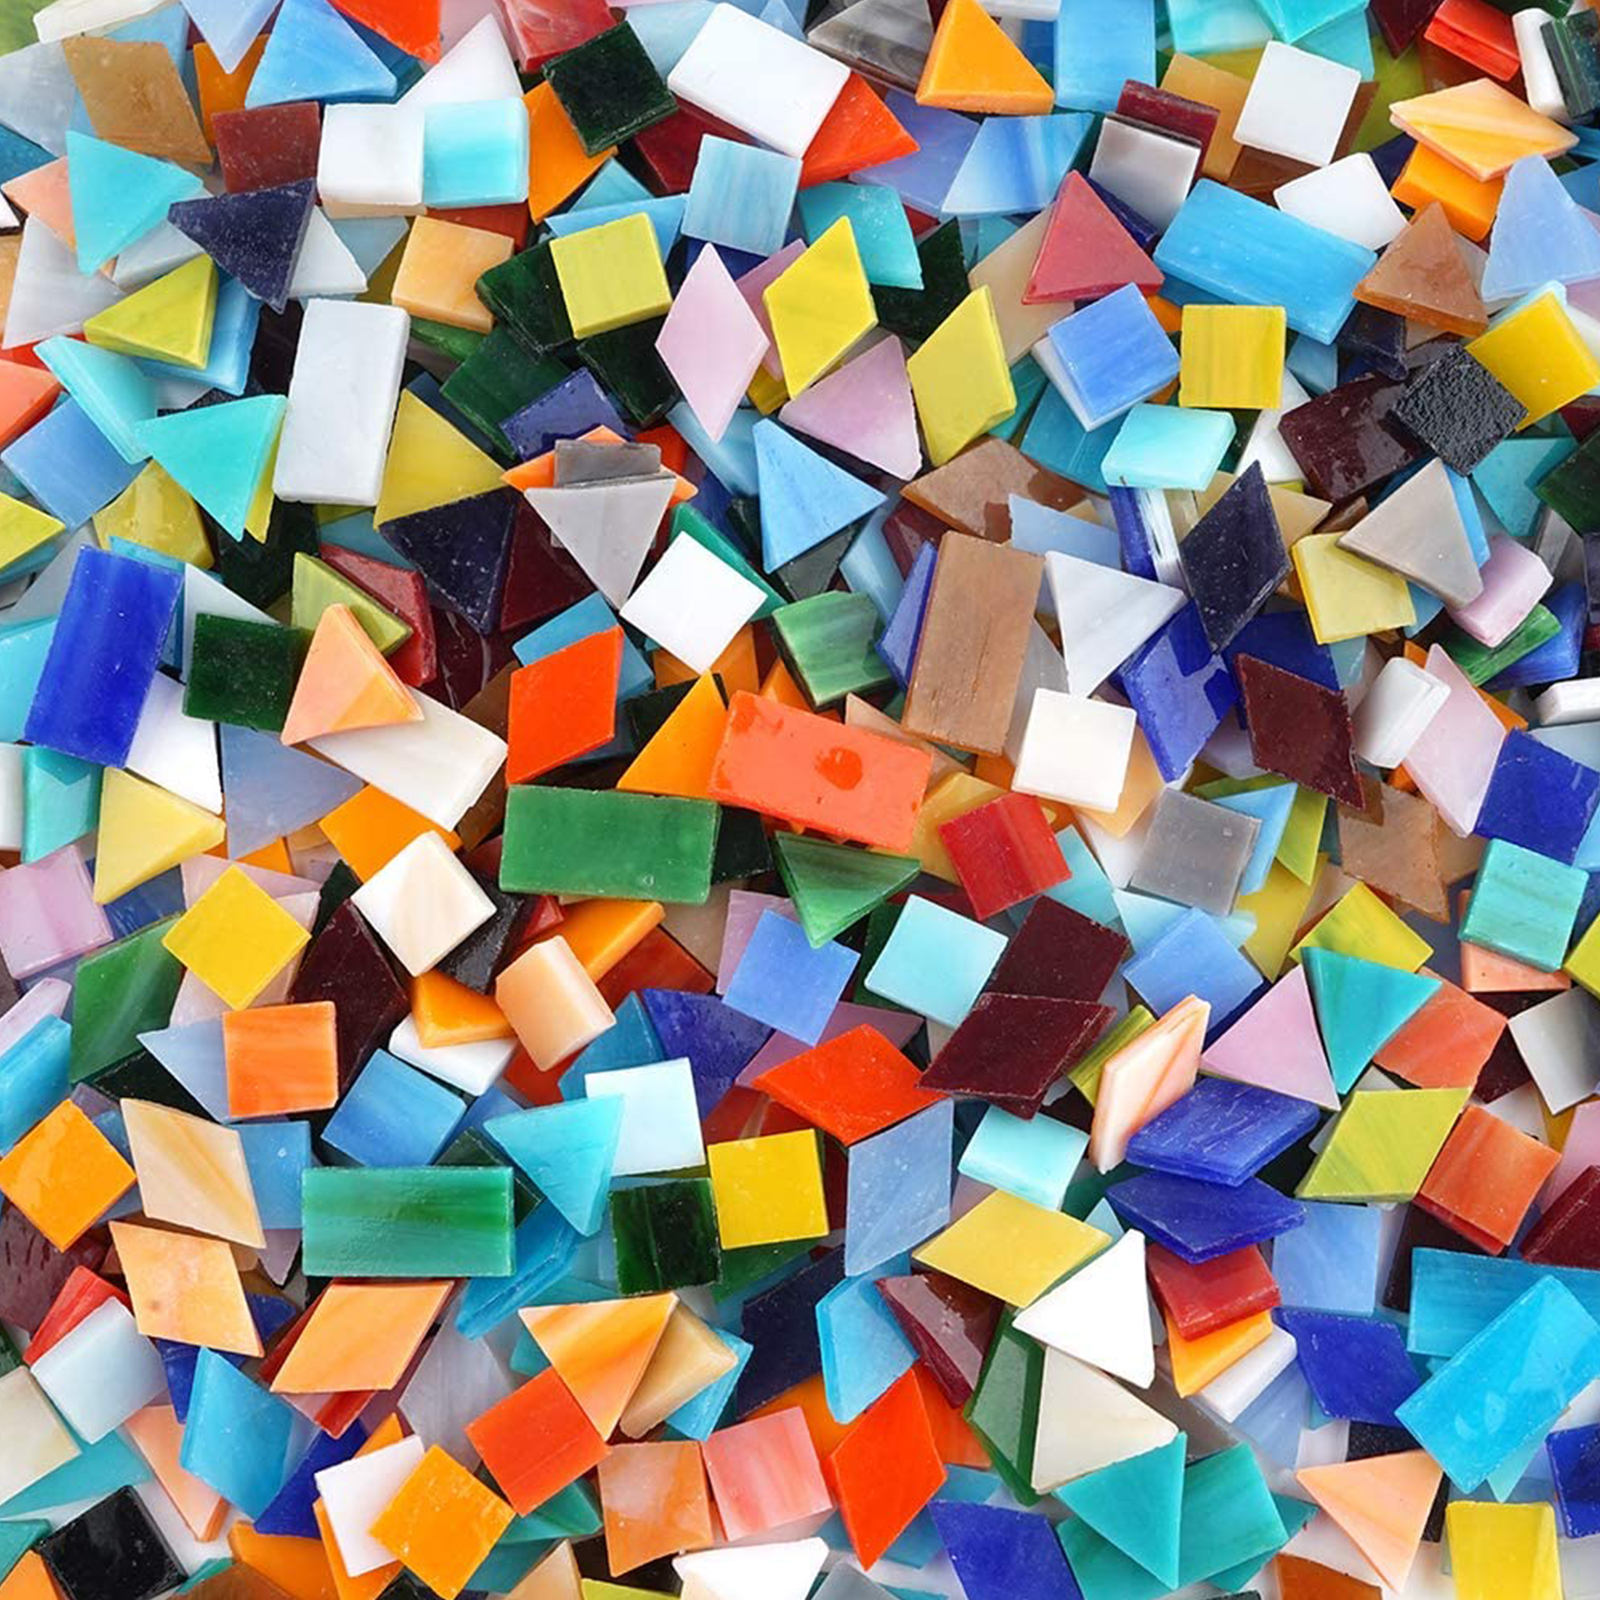 Mornajina 100 Pieces Petal Mosaic Tiles Mixed Color Mosaic Glass